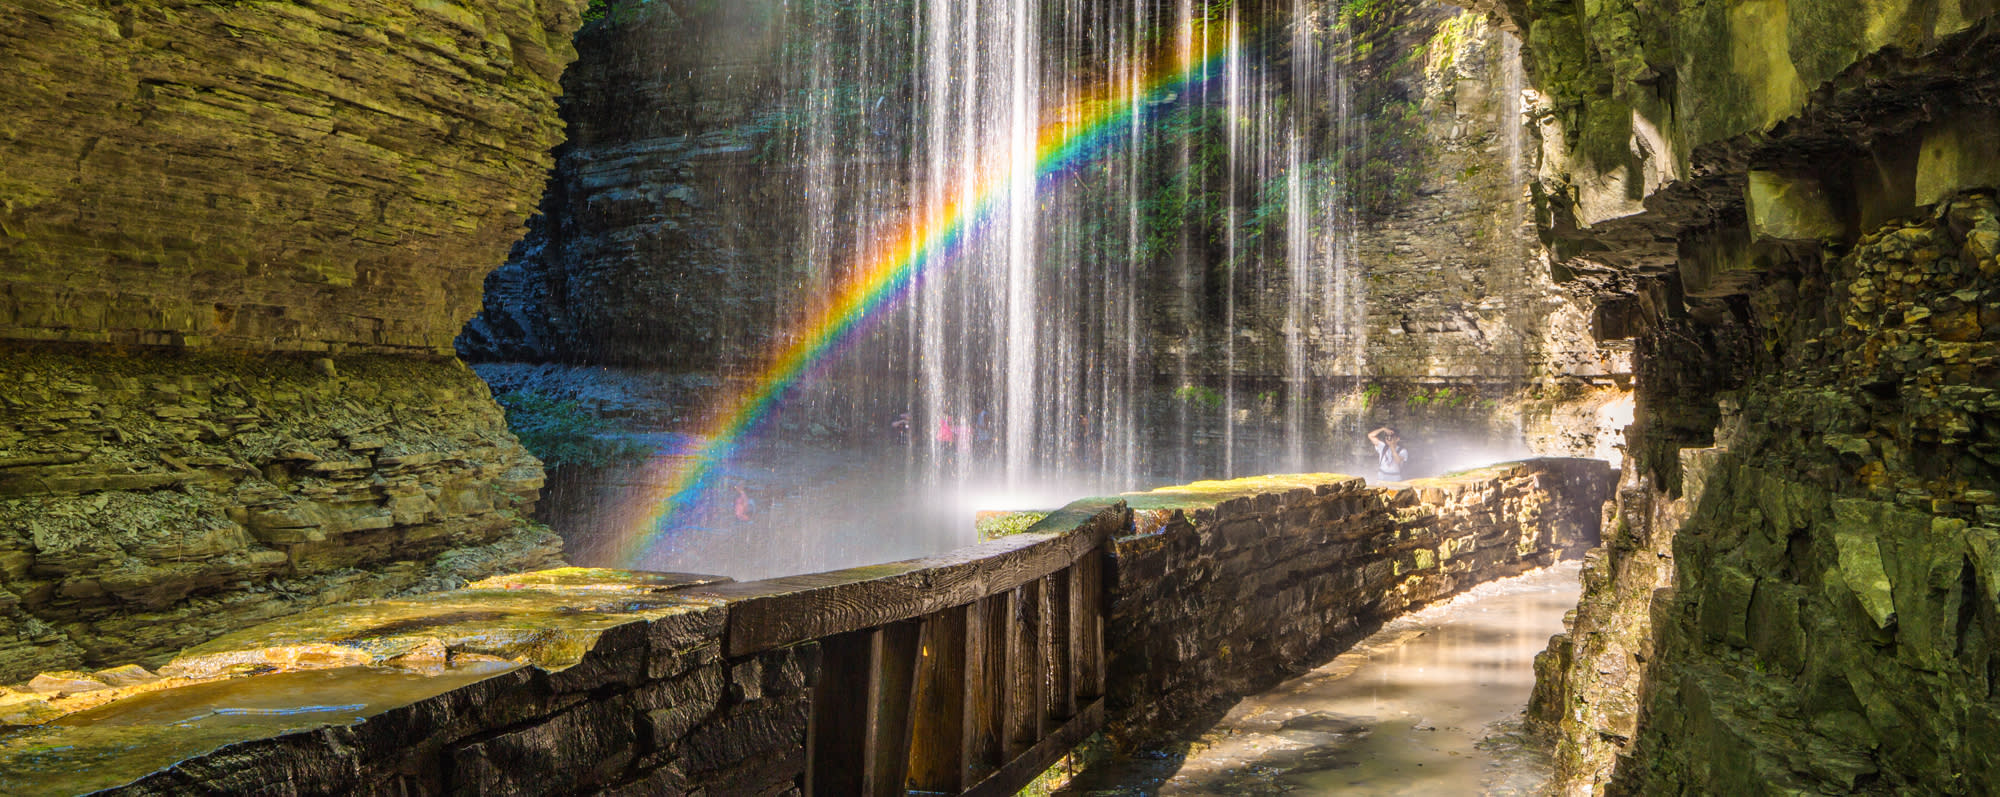 A rainbow shining in Watkins Glen State Park